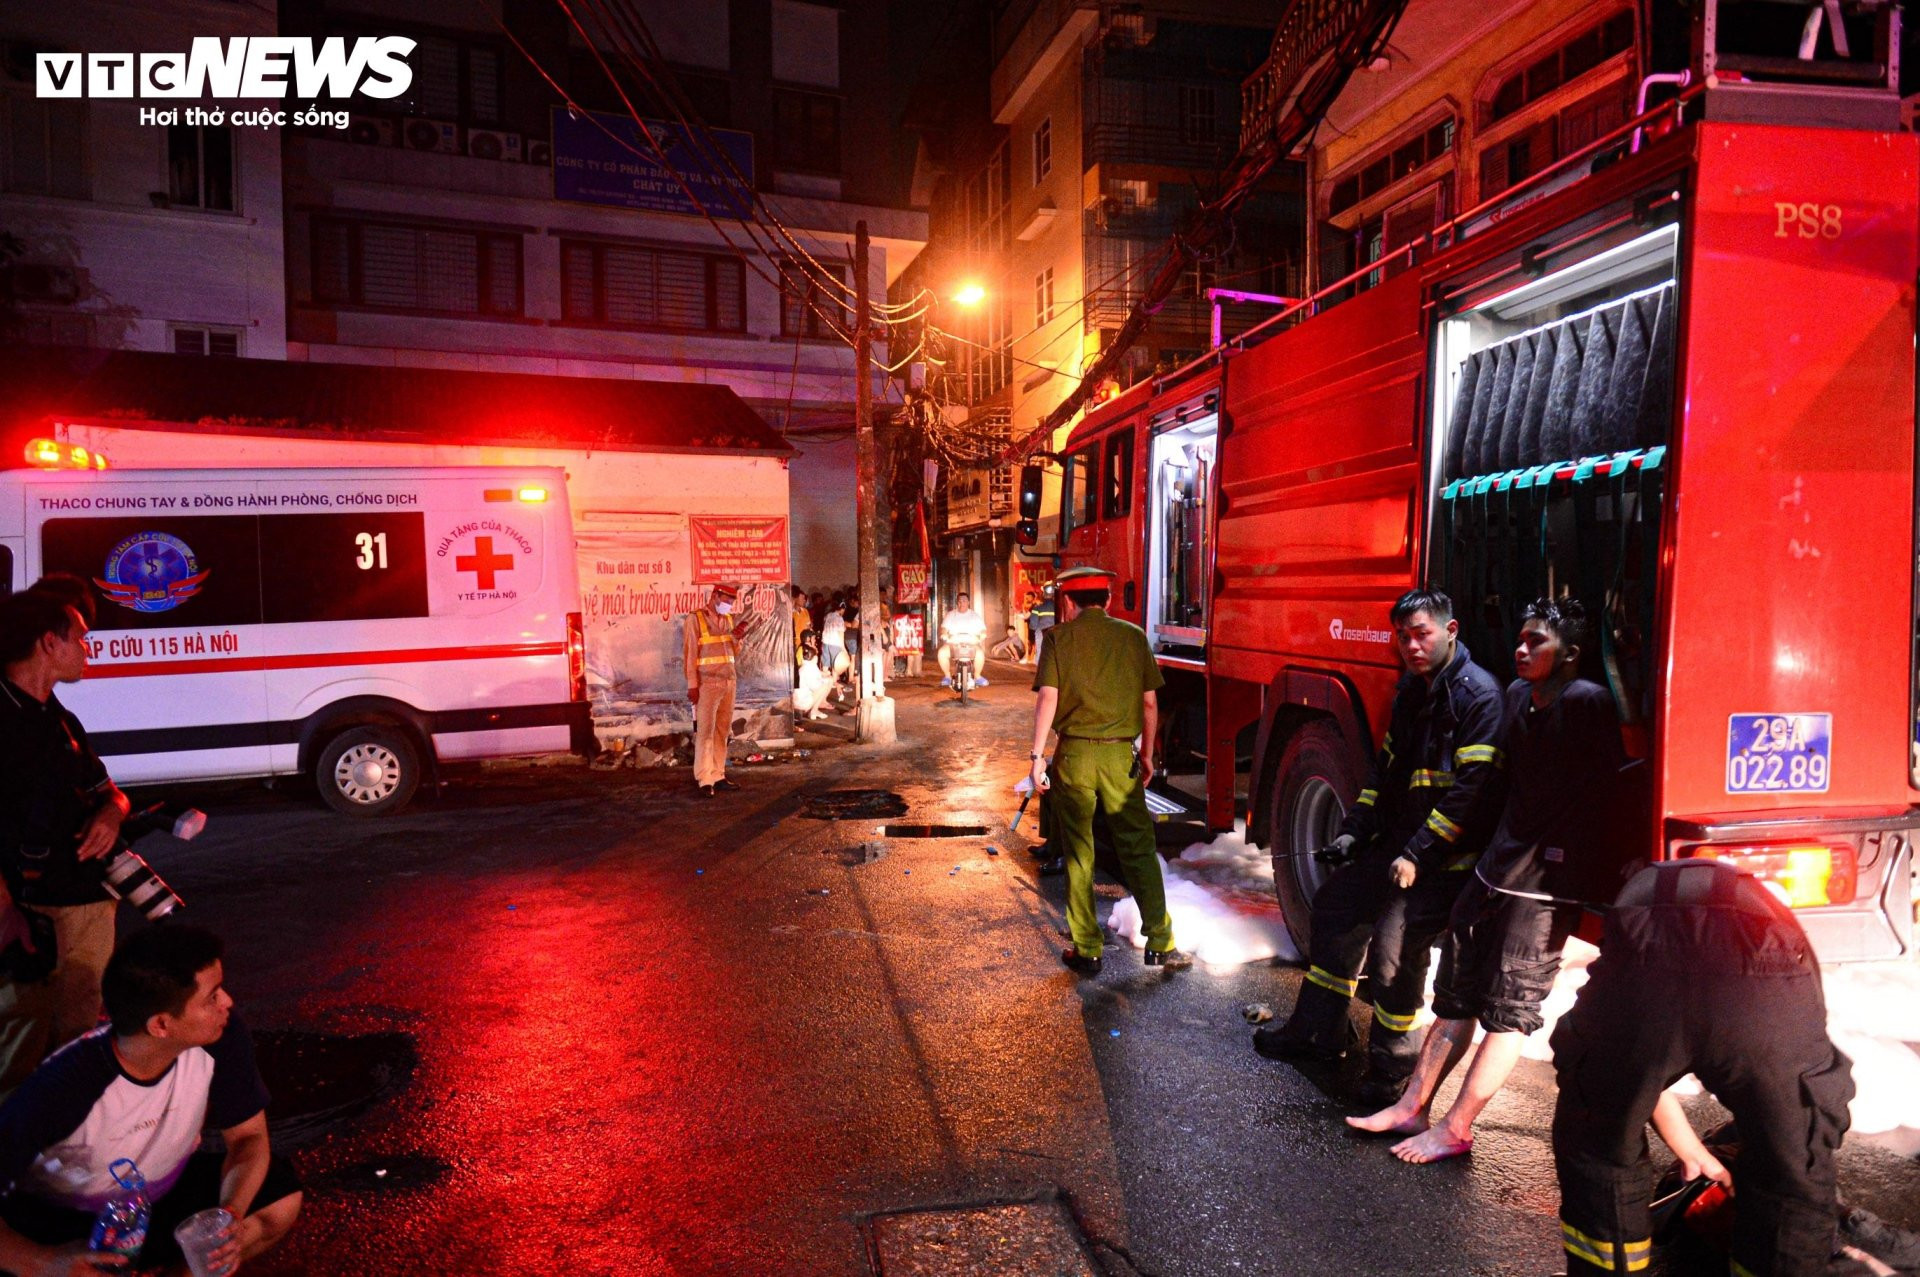 Hiện trường vụ cháy chung cư mini ở Hà Nội trong đêm, nhiều người ngất xỉu - 13